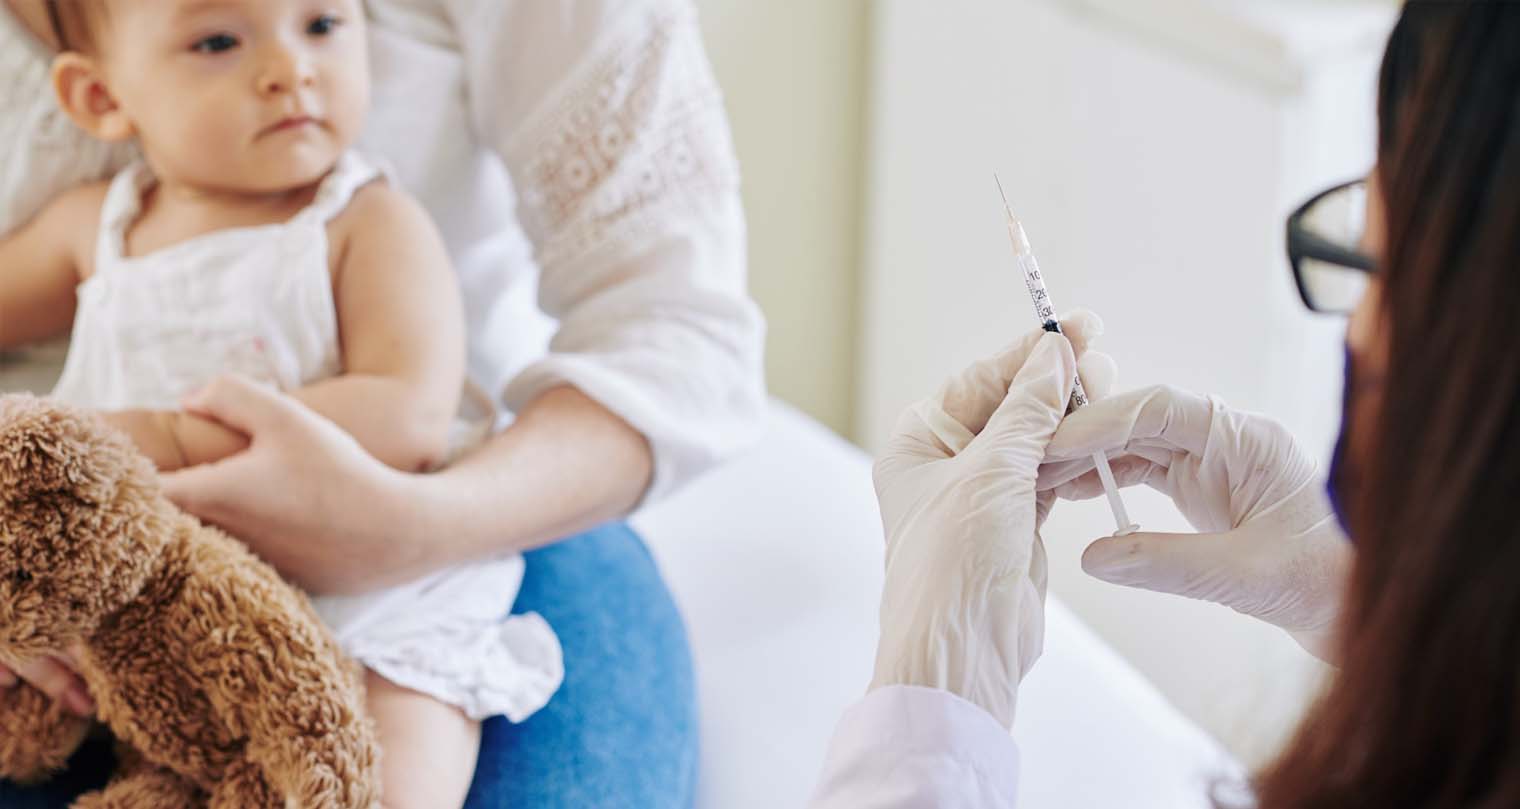 Penting! Ini 6 Jenis Vaksin untuk Bayi yang Baru Lahir, Anjuran Kemenkes